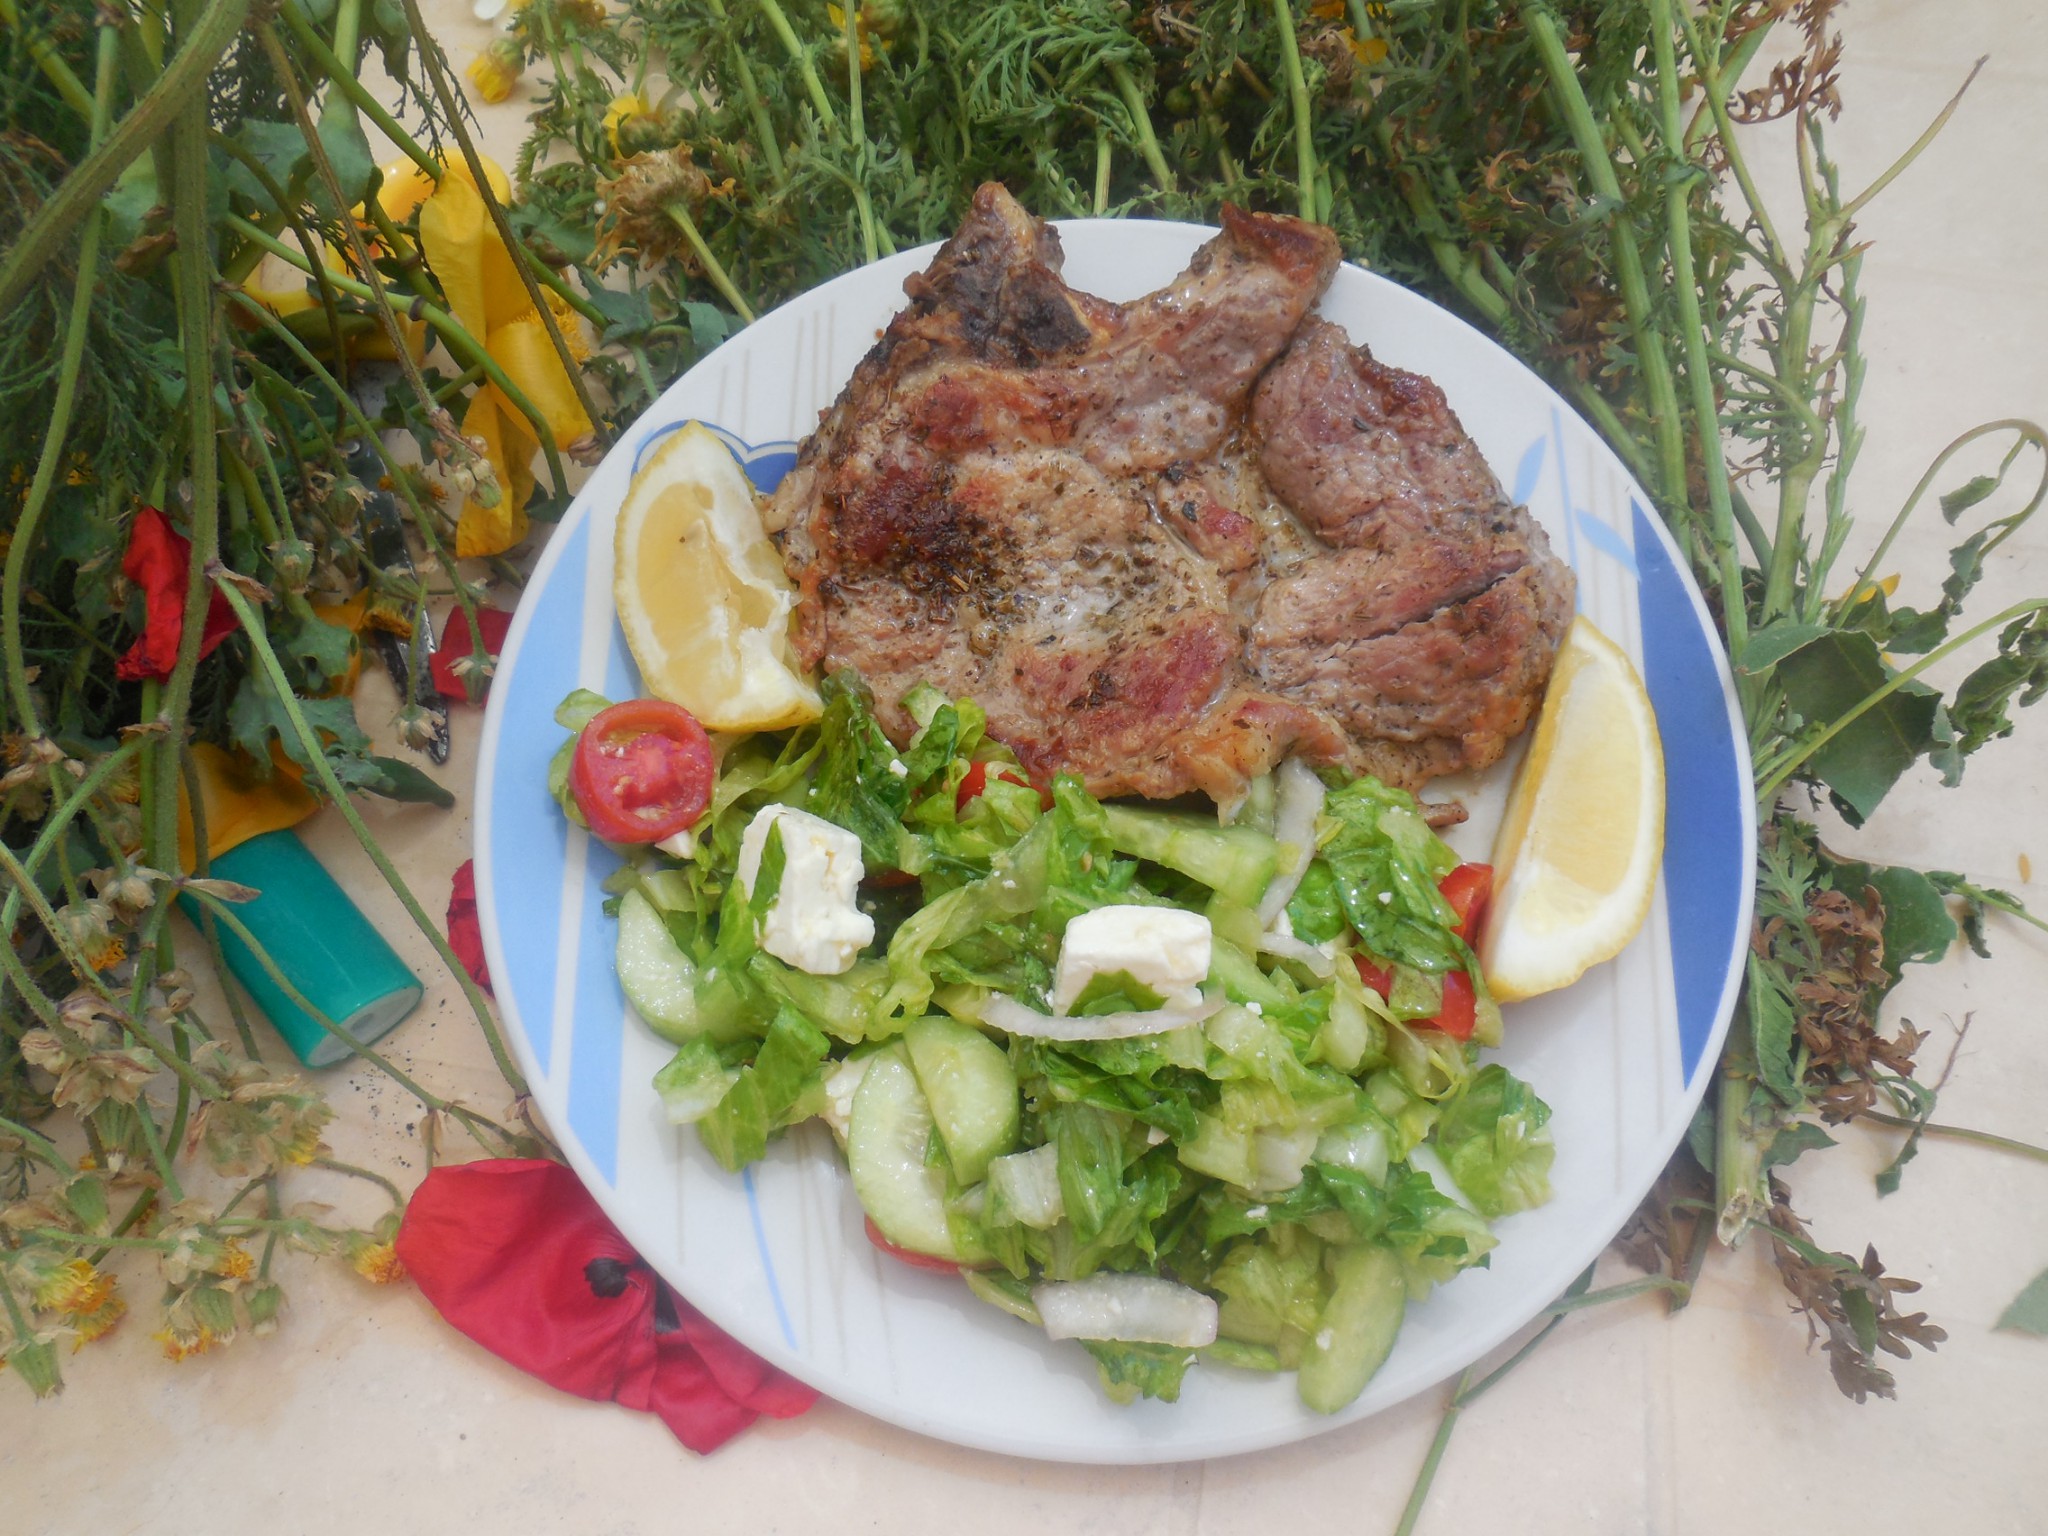 BBQ chops and Greek salad!